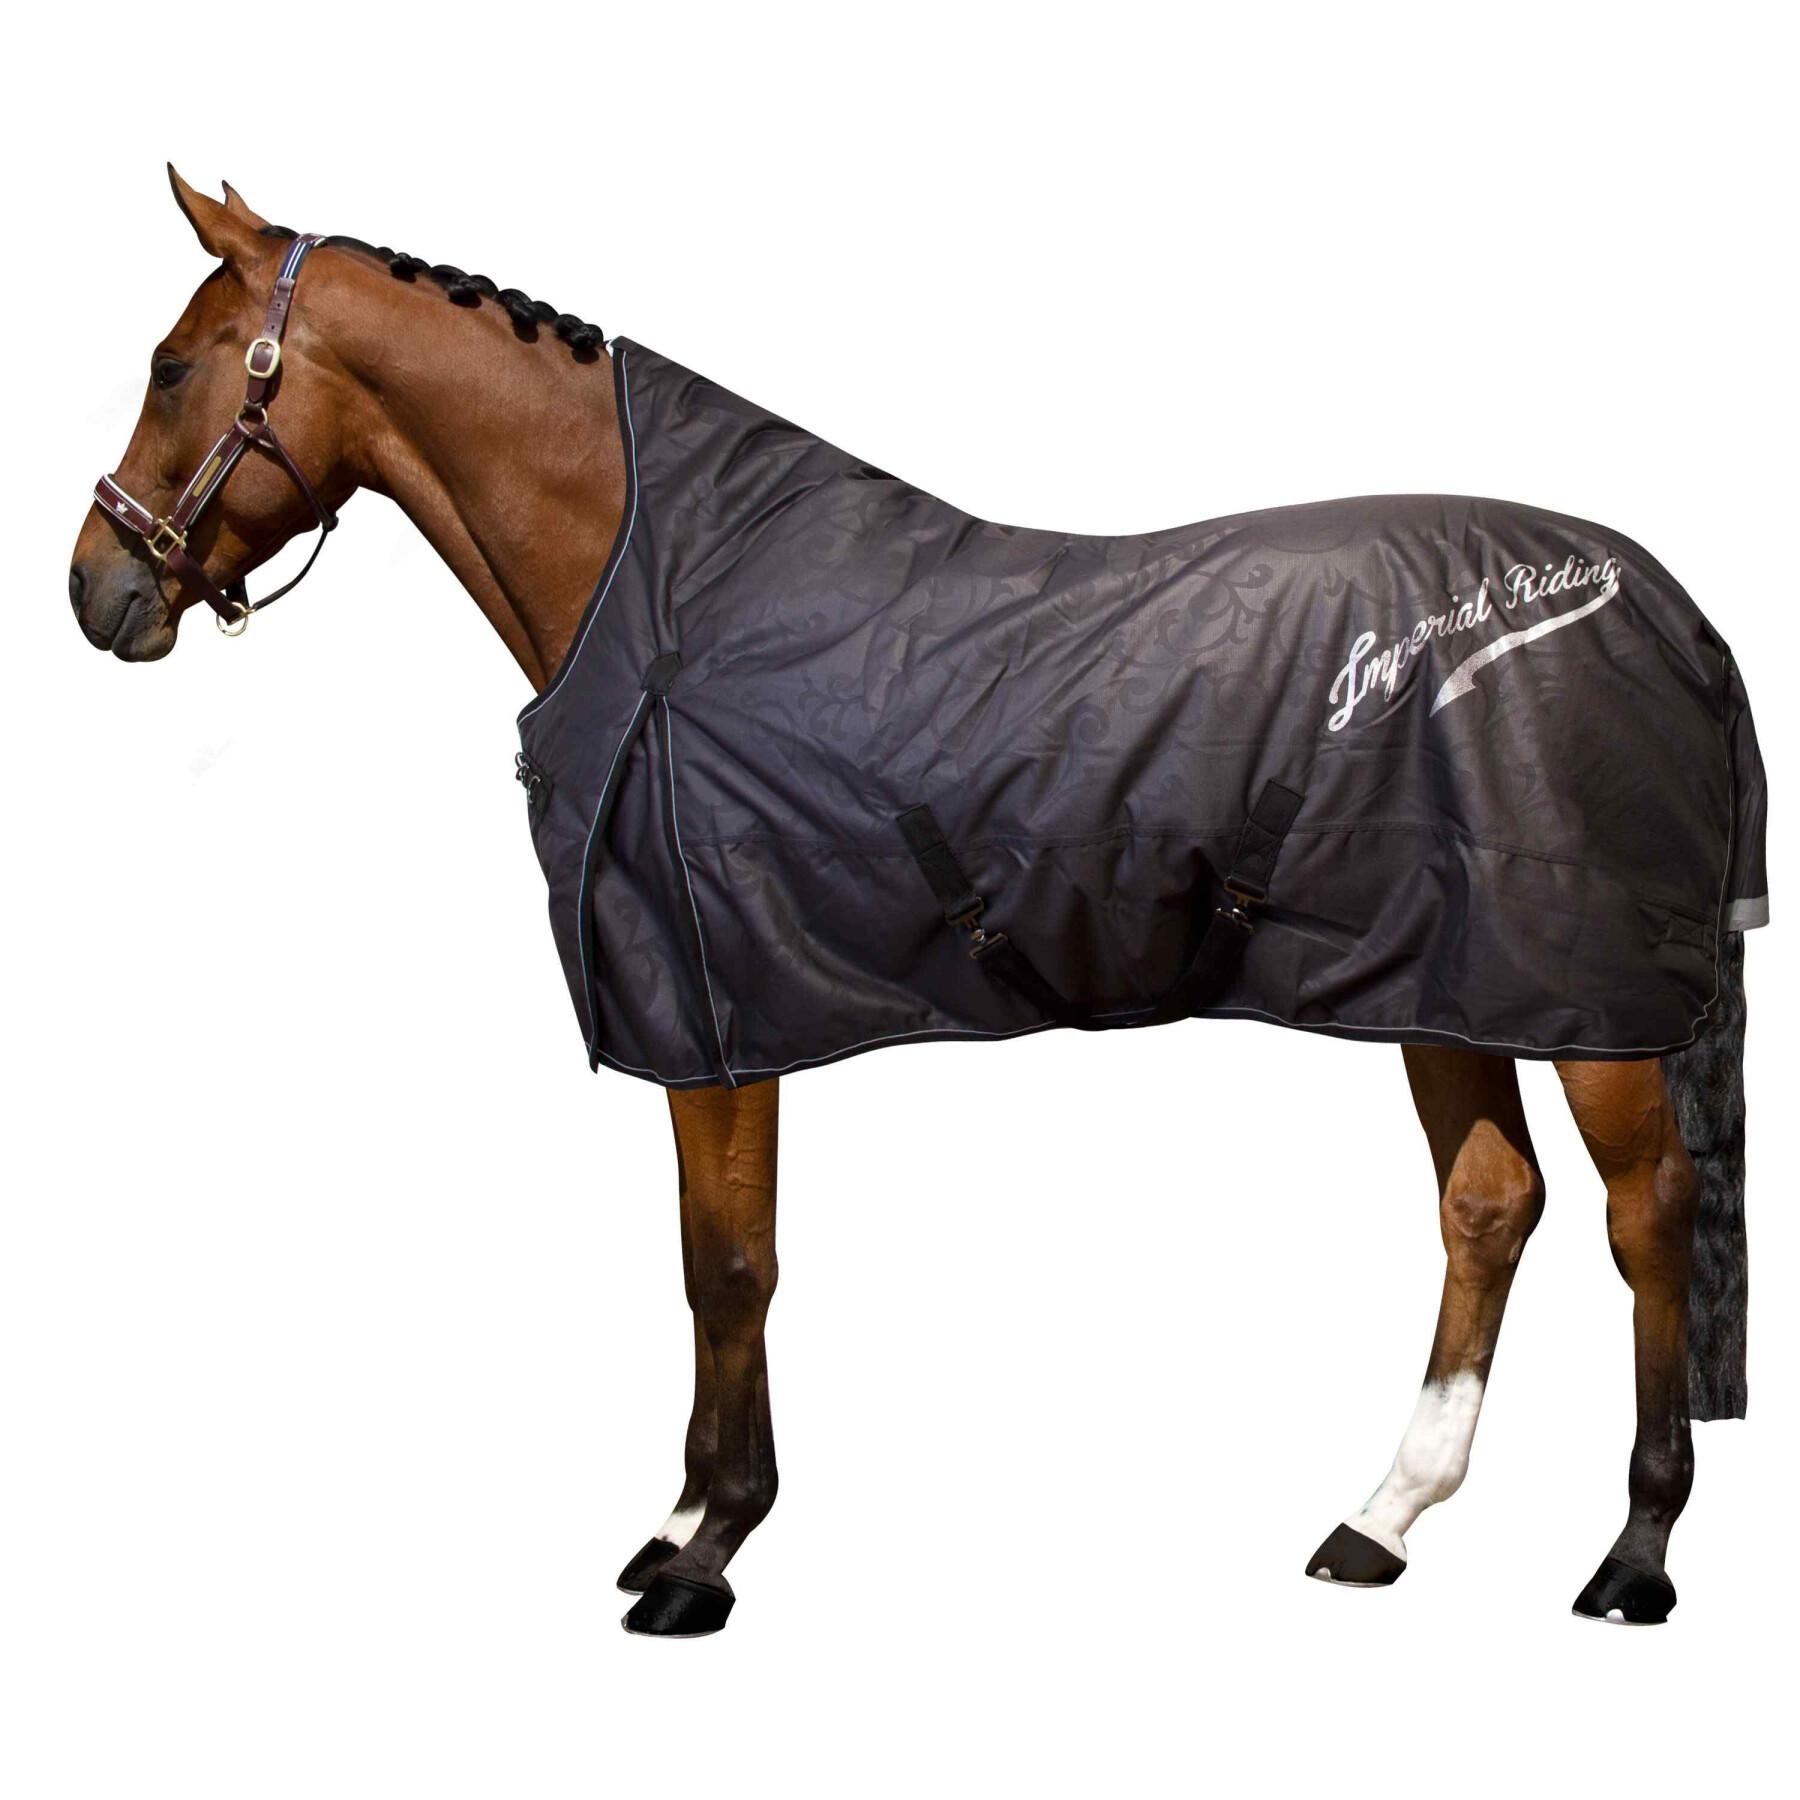 Outdoor-Decke für Pferde Imperial Riding Super-dry 400 g